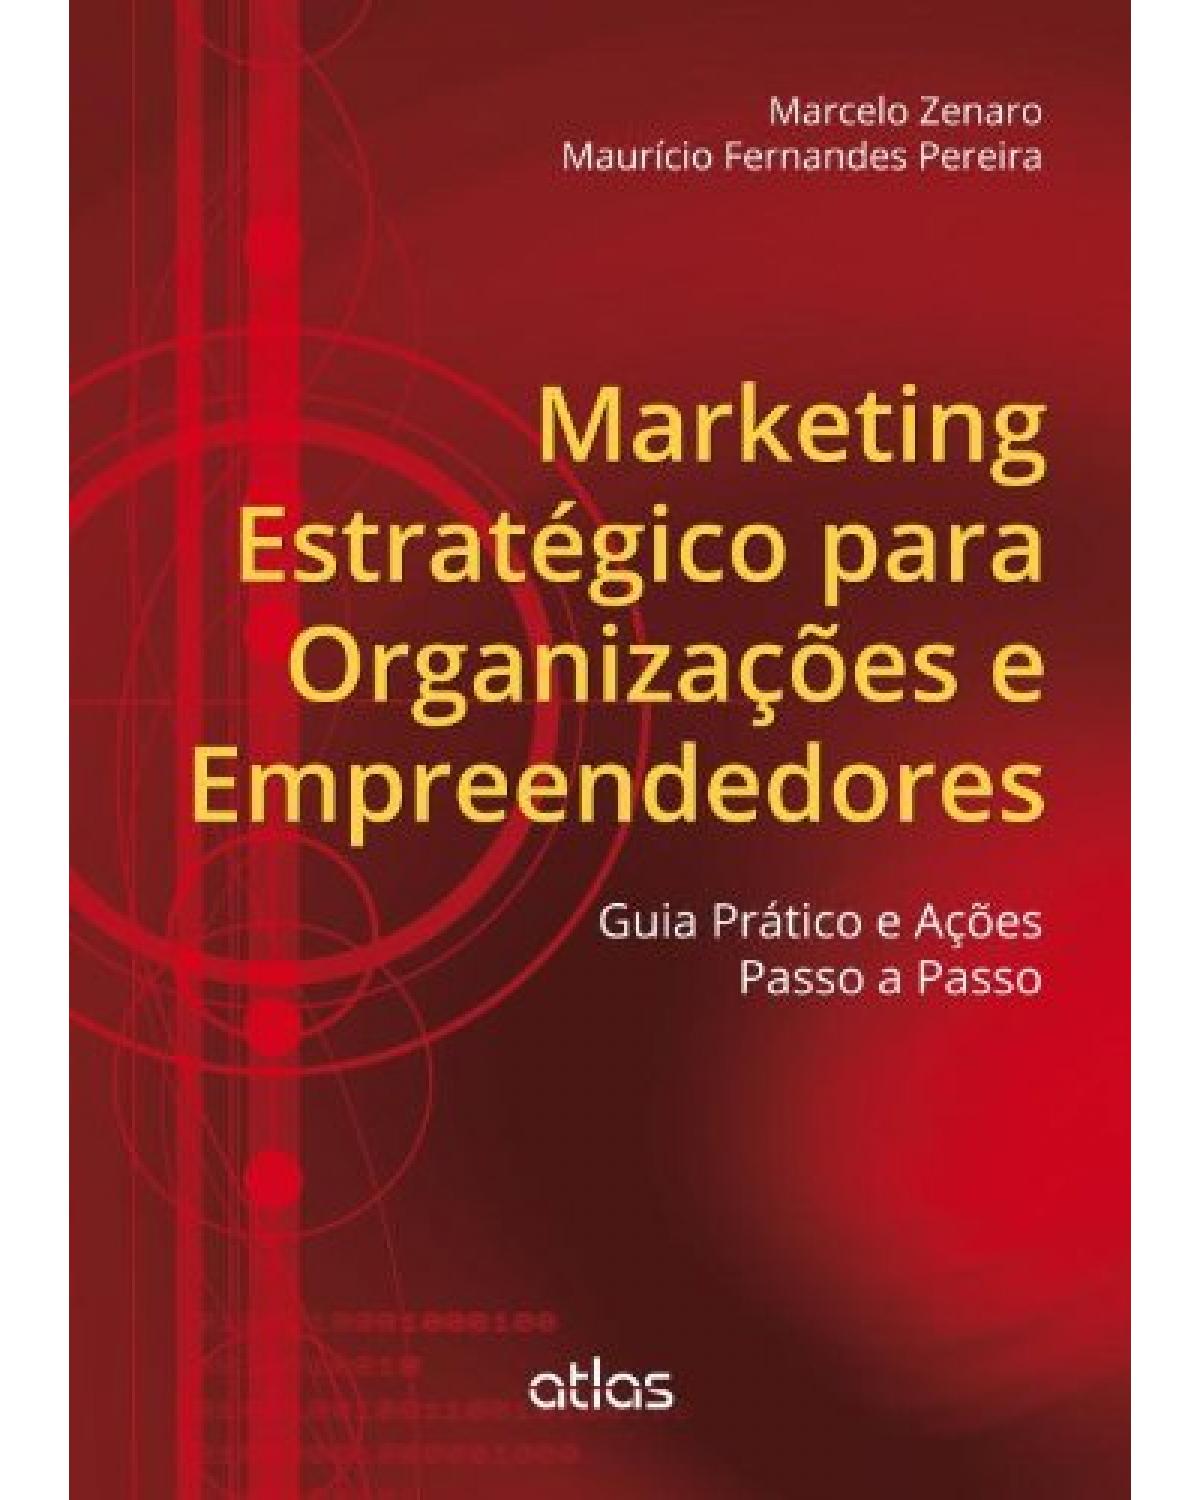 Marketing estratégico para organizações e empreendedores - Guia prático e ações passo a passo - 1ª Edição | 2013